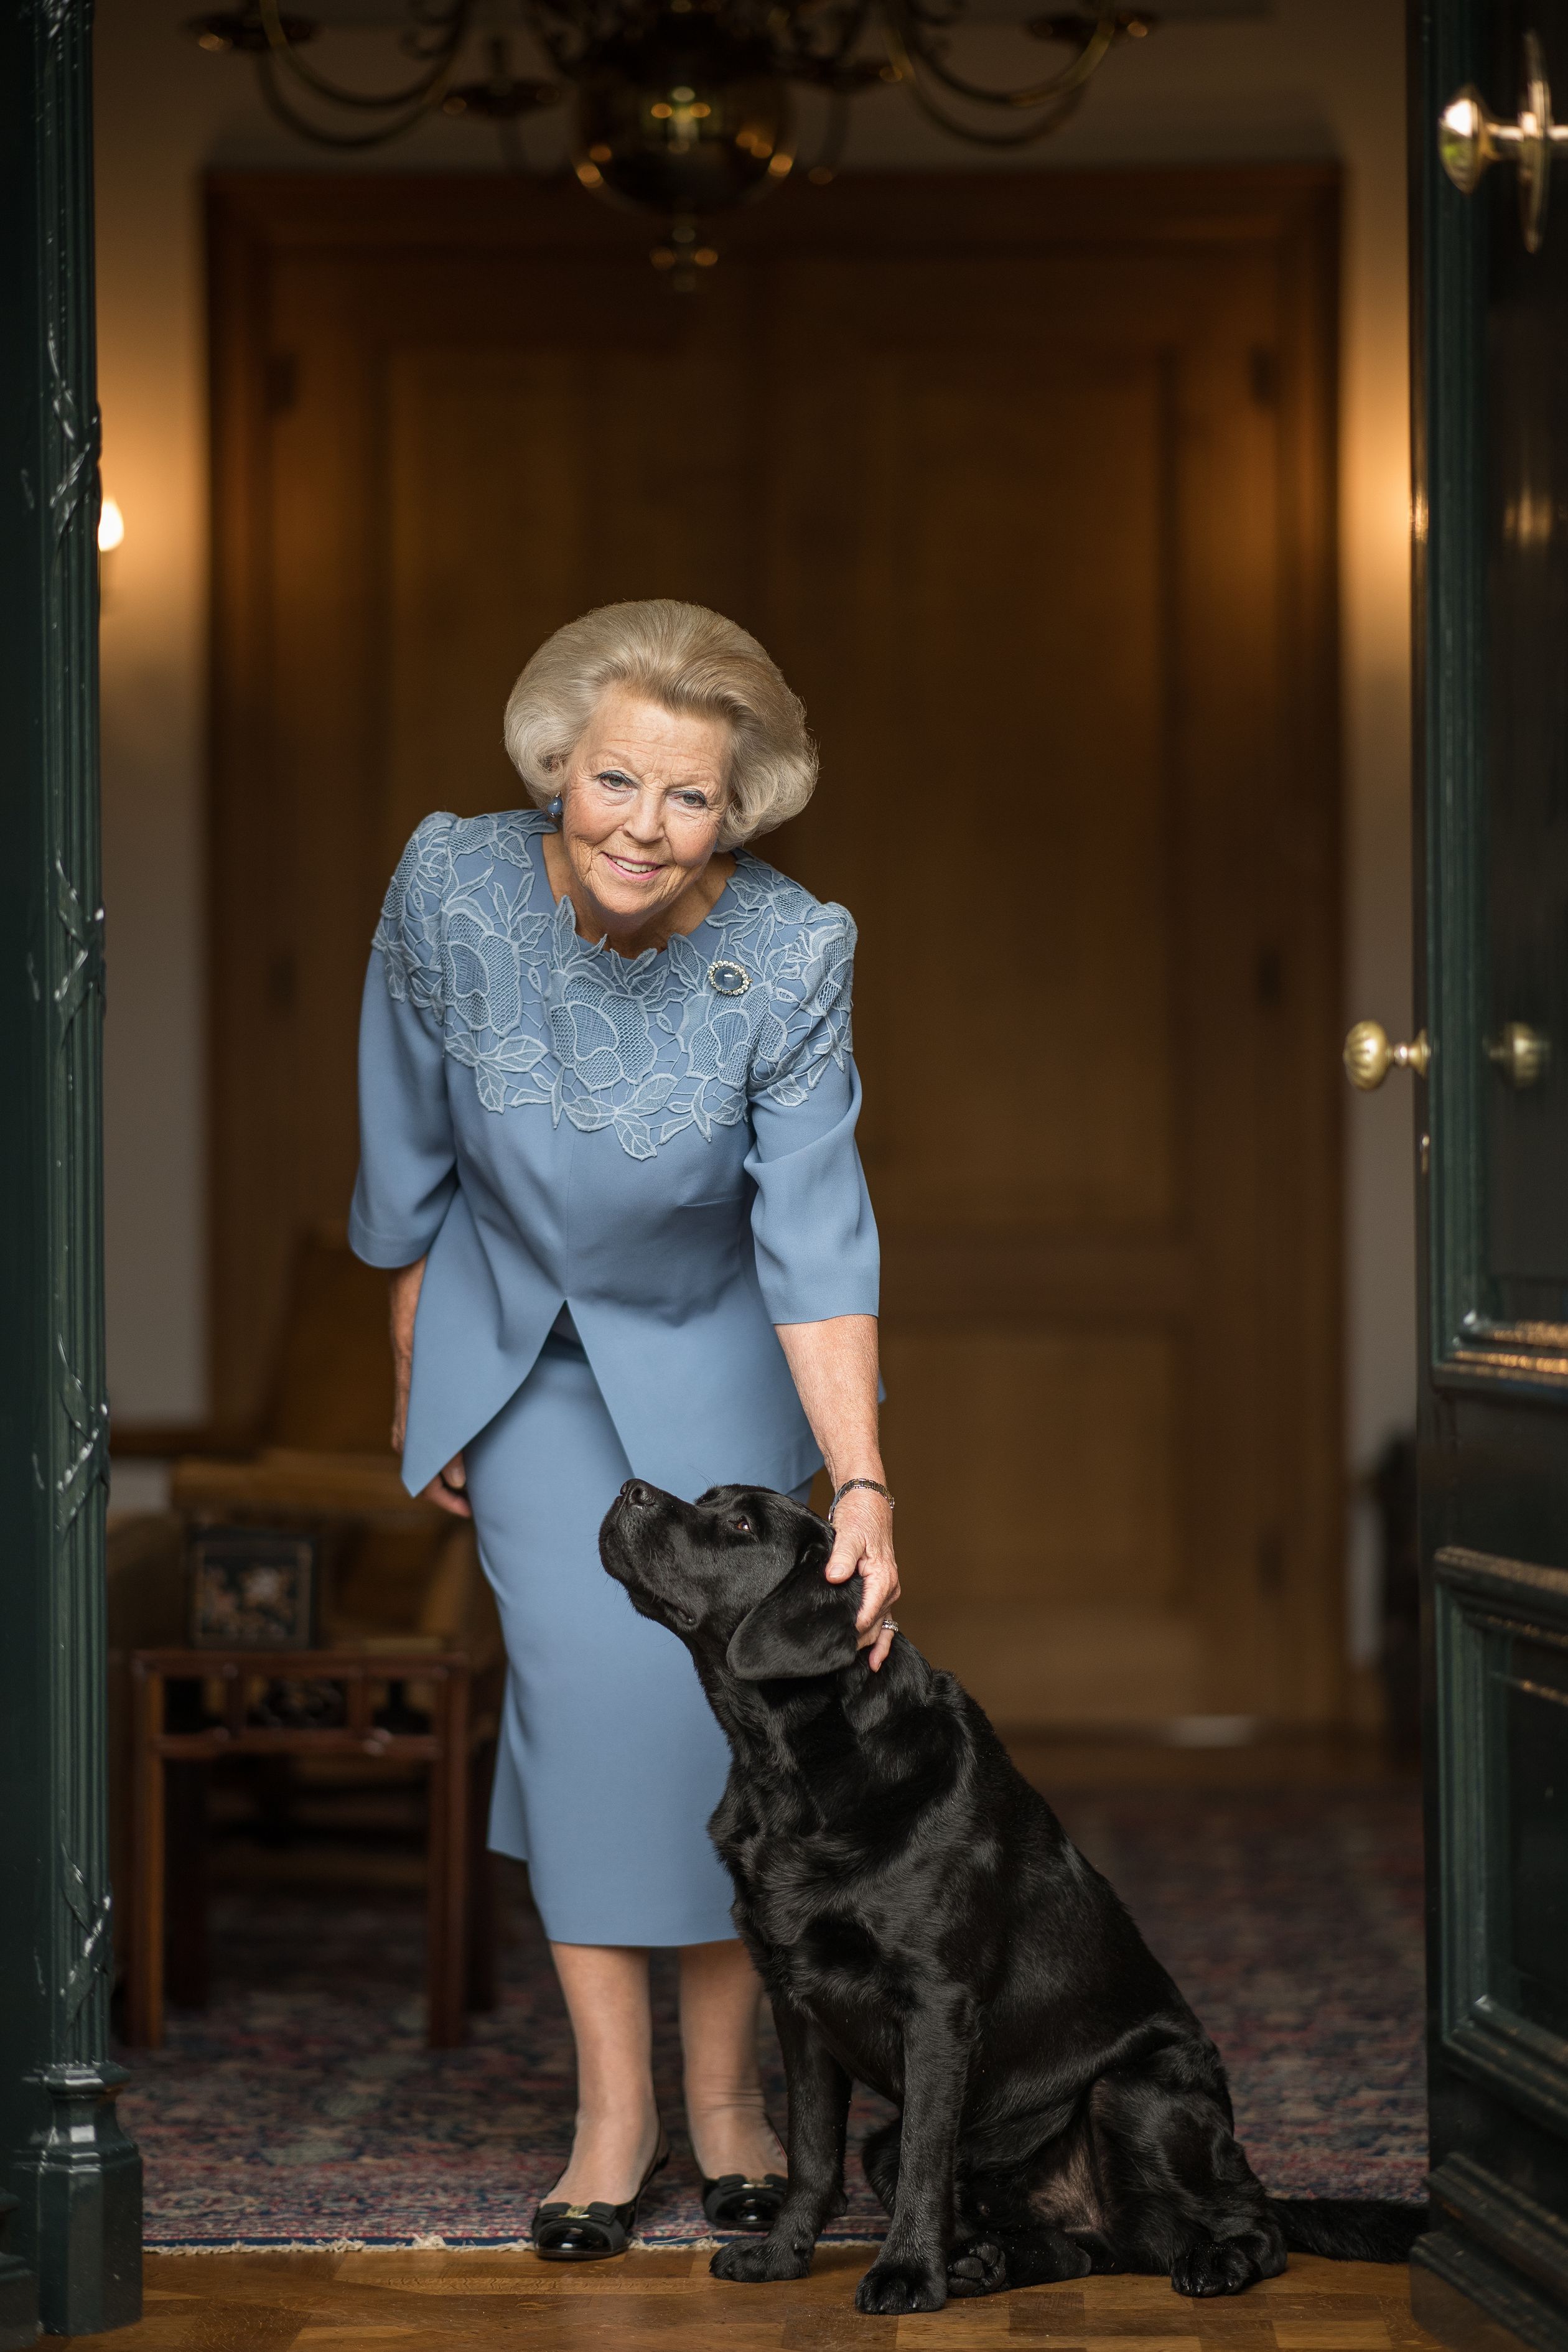 Op de dag voor haar 80e verjaardag deelt de RVD enkele nieuwe foto's van prinses Beatrix.